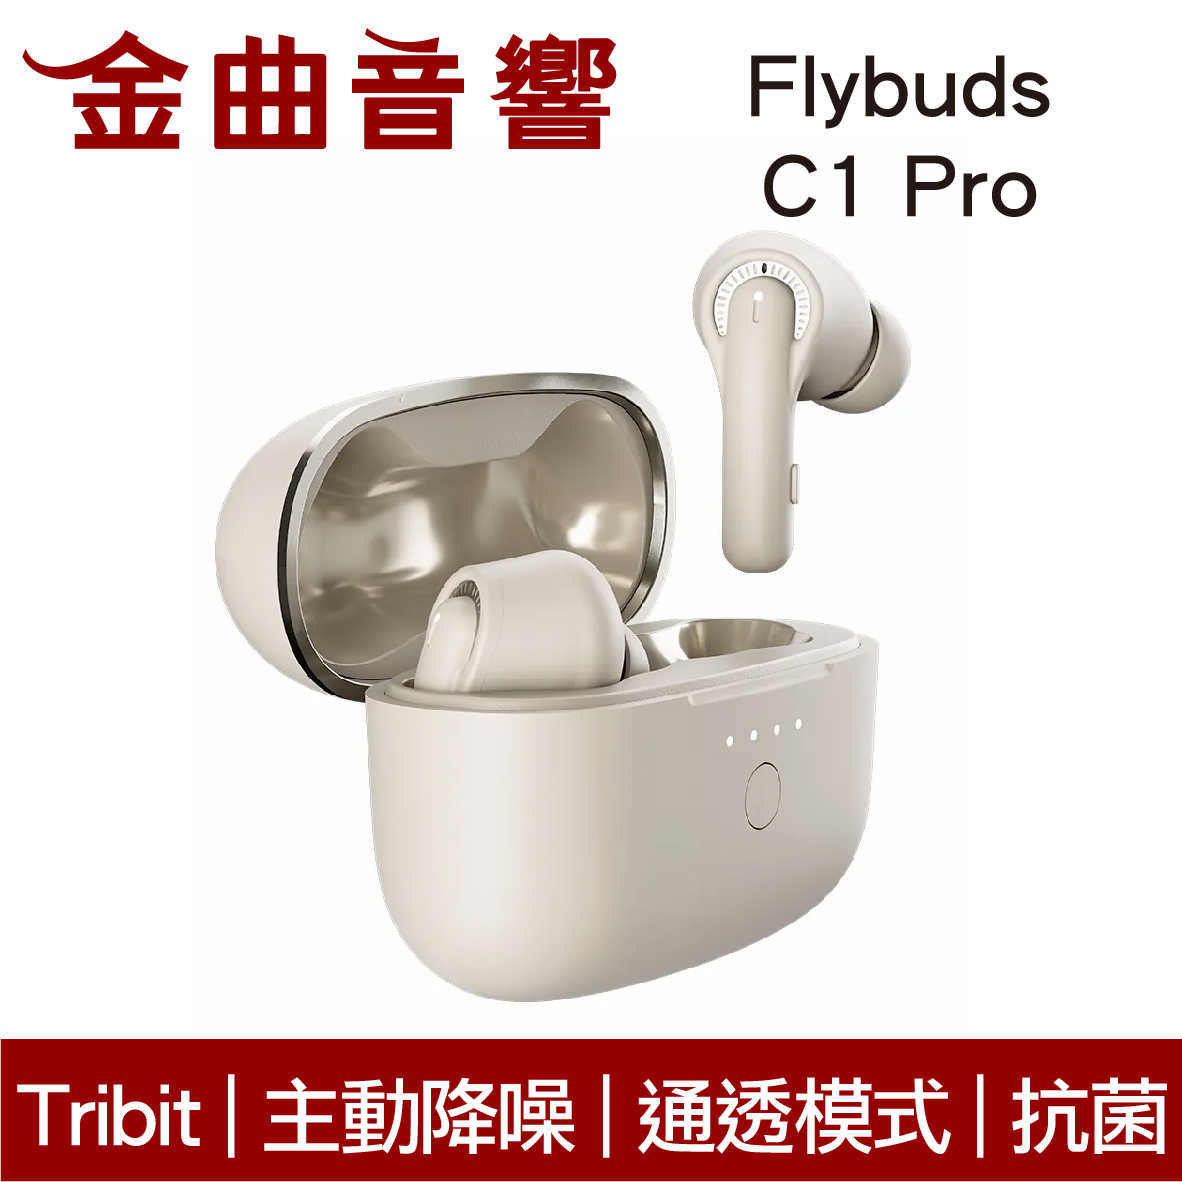 Tribit Flybuds C1 Pro 主動降噪 通透模式 抗菌設計 真無線 藍芽 耳機 | 金曲音響